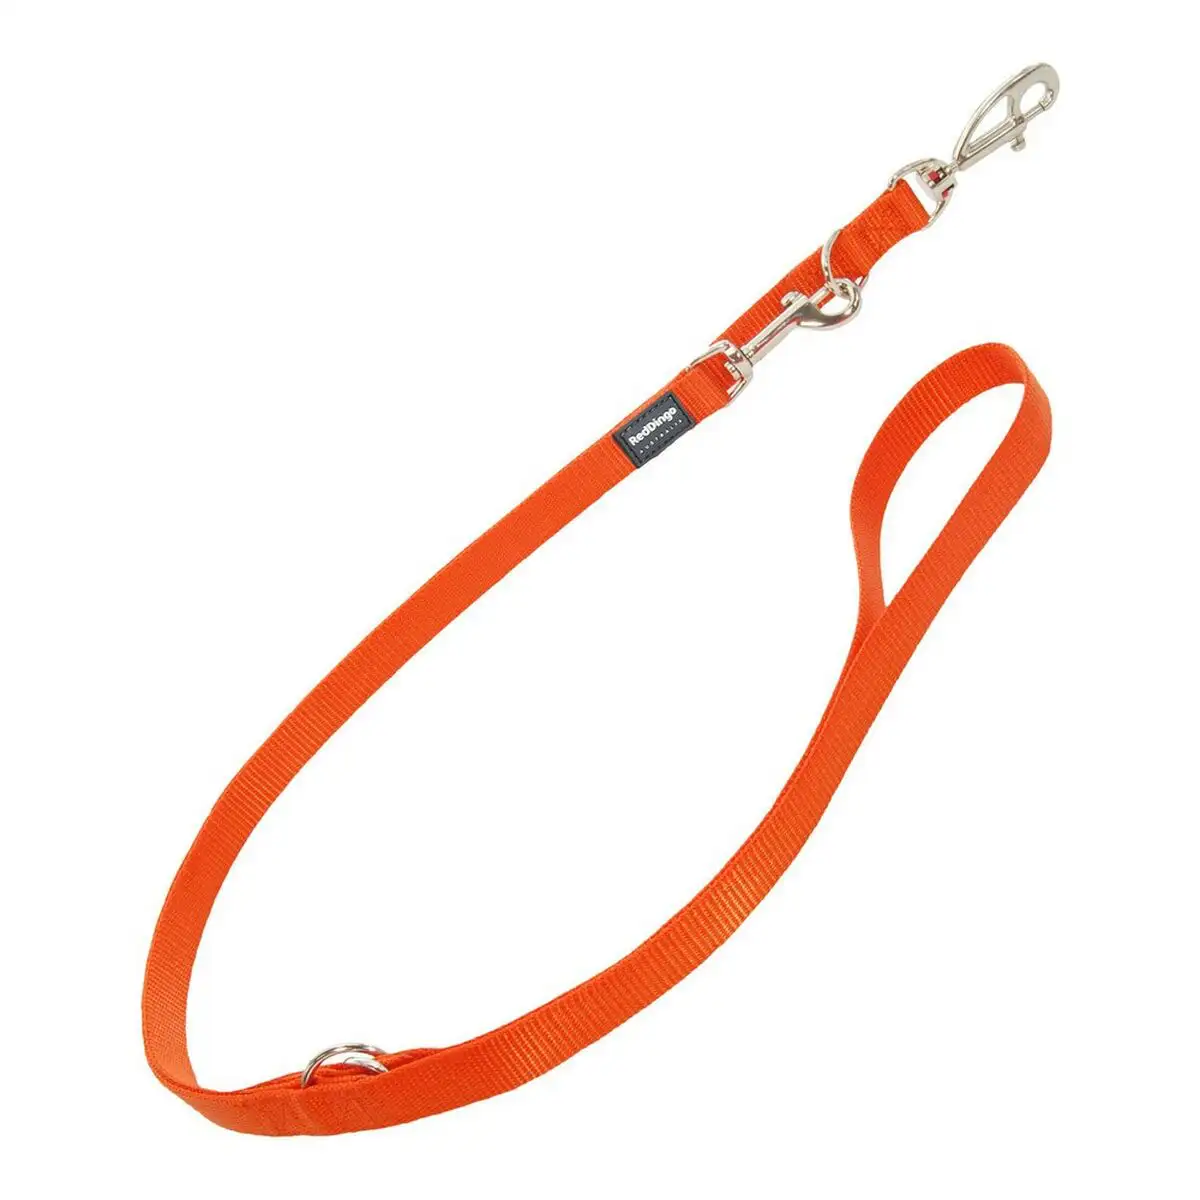 Laisse pour chien red dingo orange 1 5 x 200 cm _1560. DIAYTAR SENEGAL - Votre Passage vers l'Élégance Accessible. Parcourez notre boutique en ligne pour trouver des produits qui vous permettent d'allier style et économies.